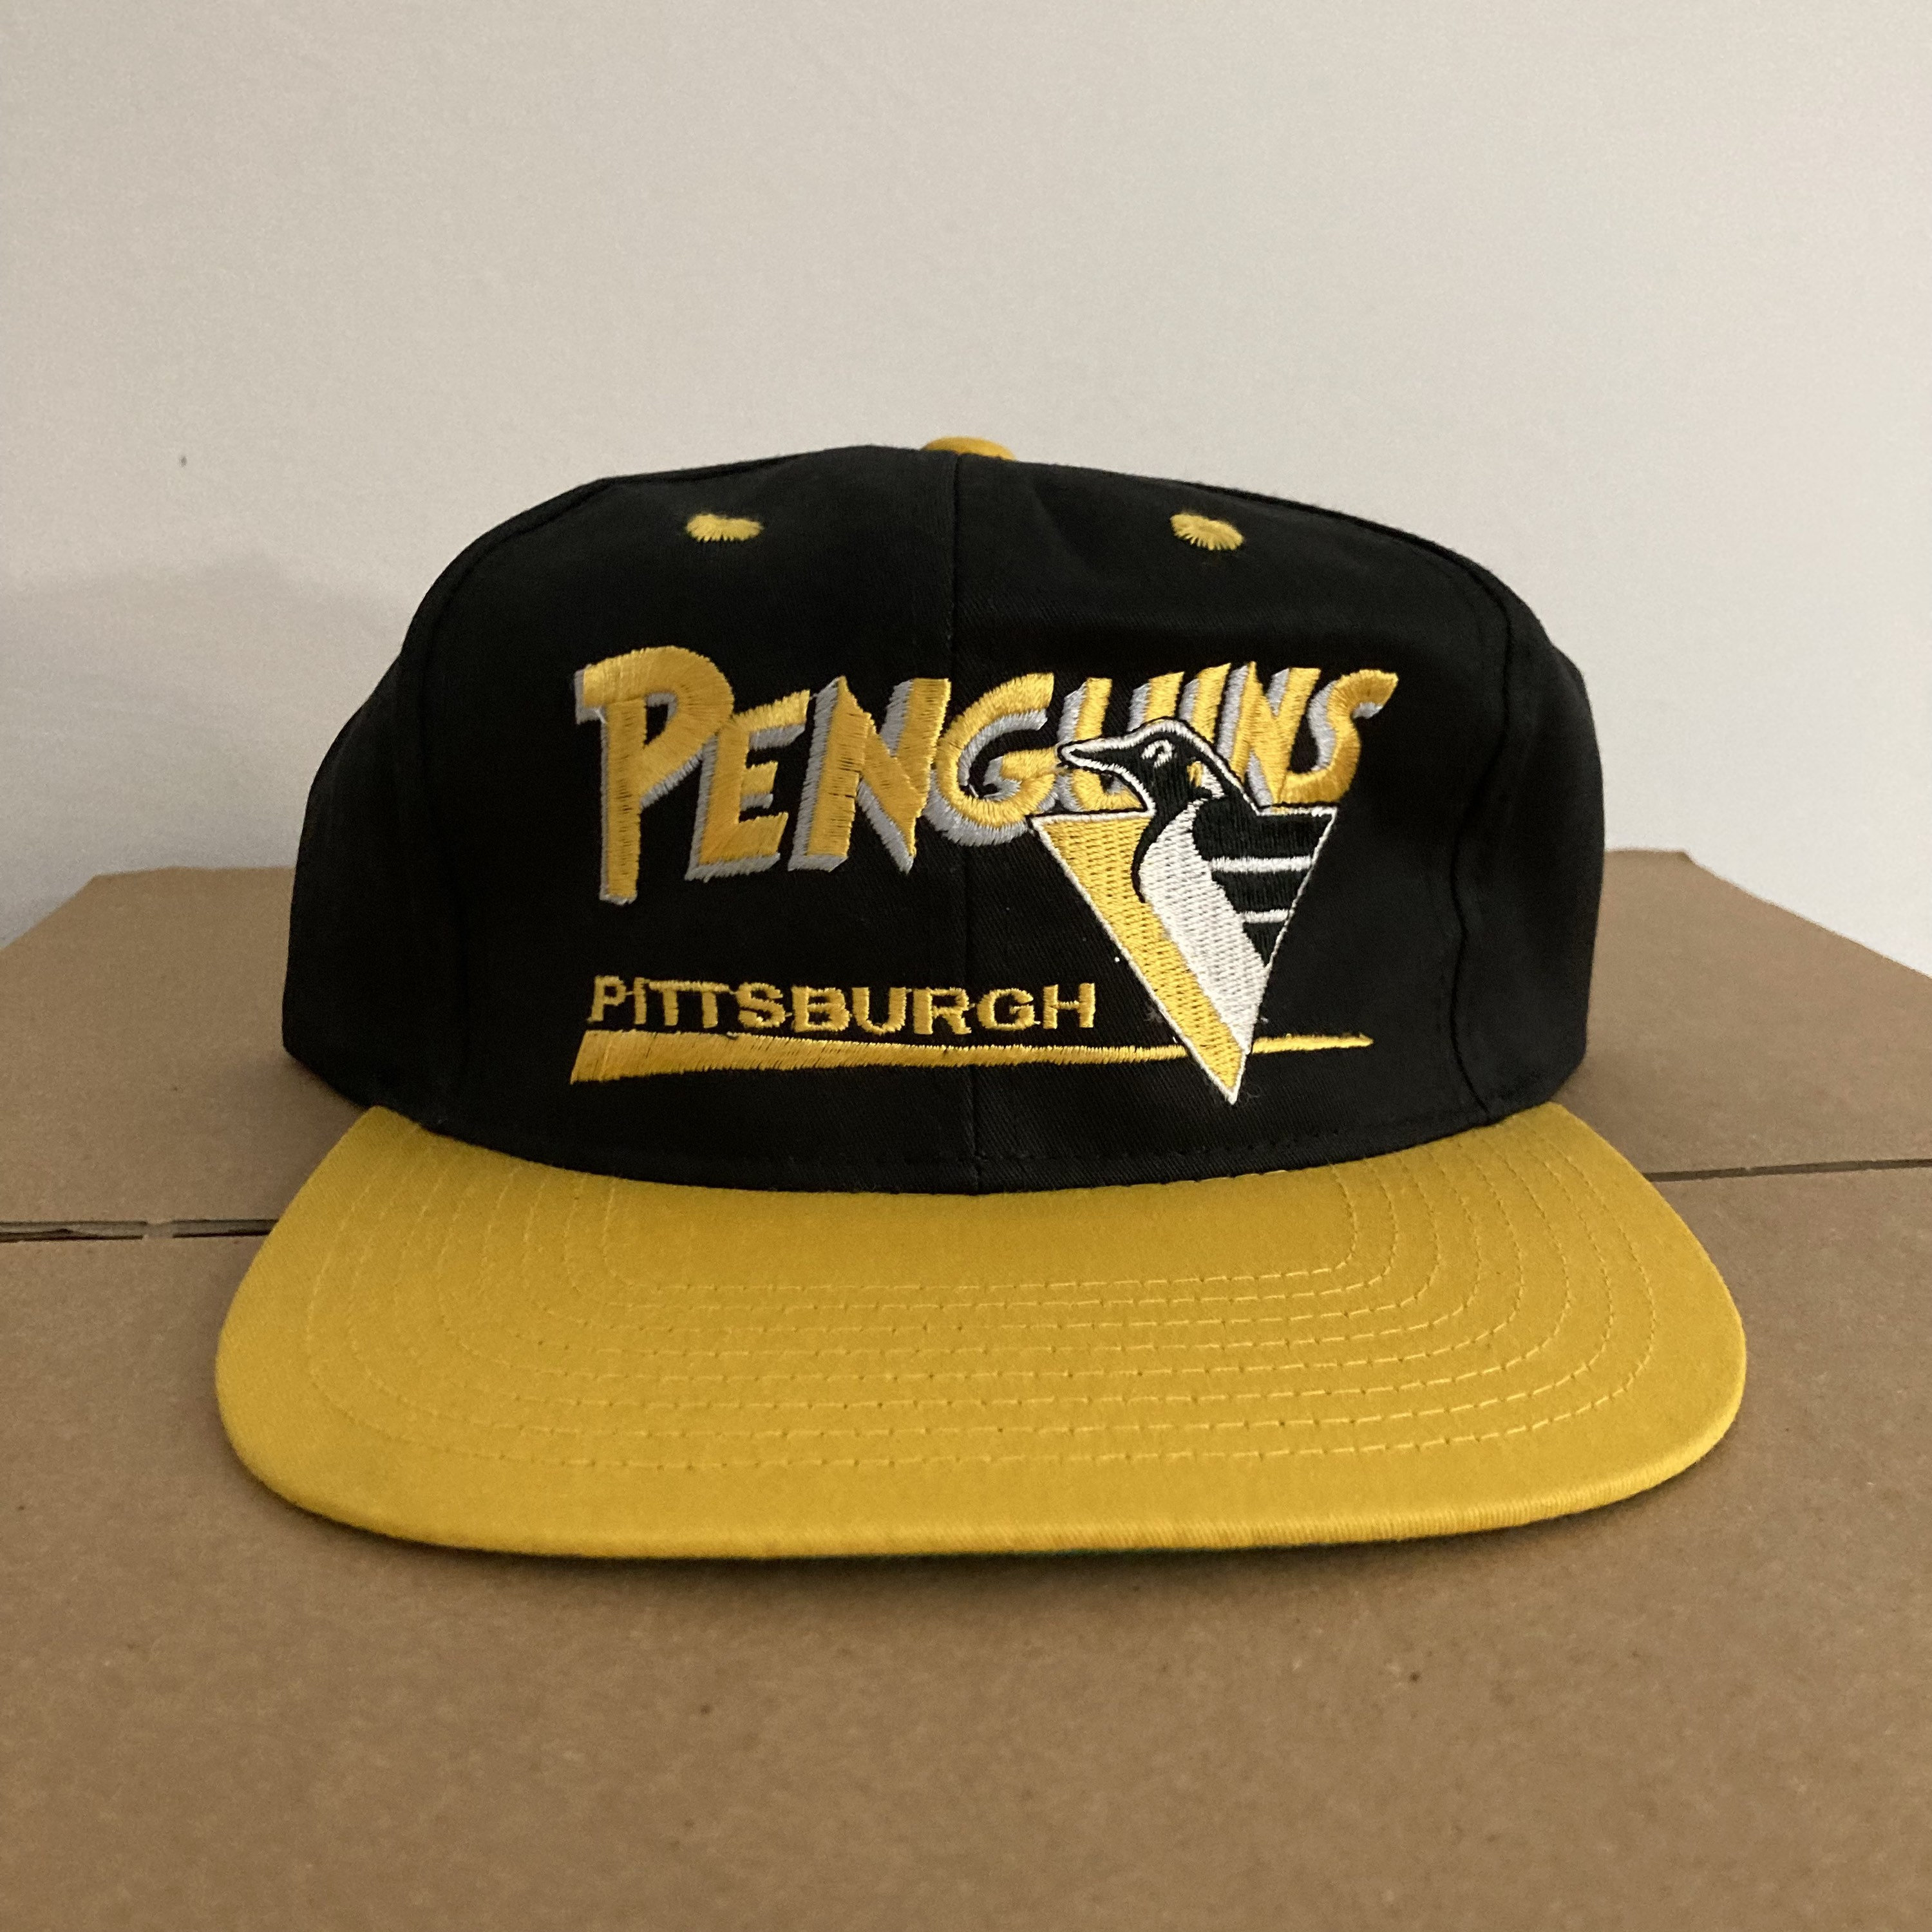 Pittsburgh Penguins Hat  Penguin hat, Clothes design, Hats